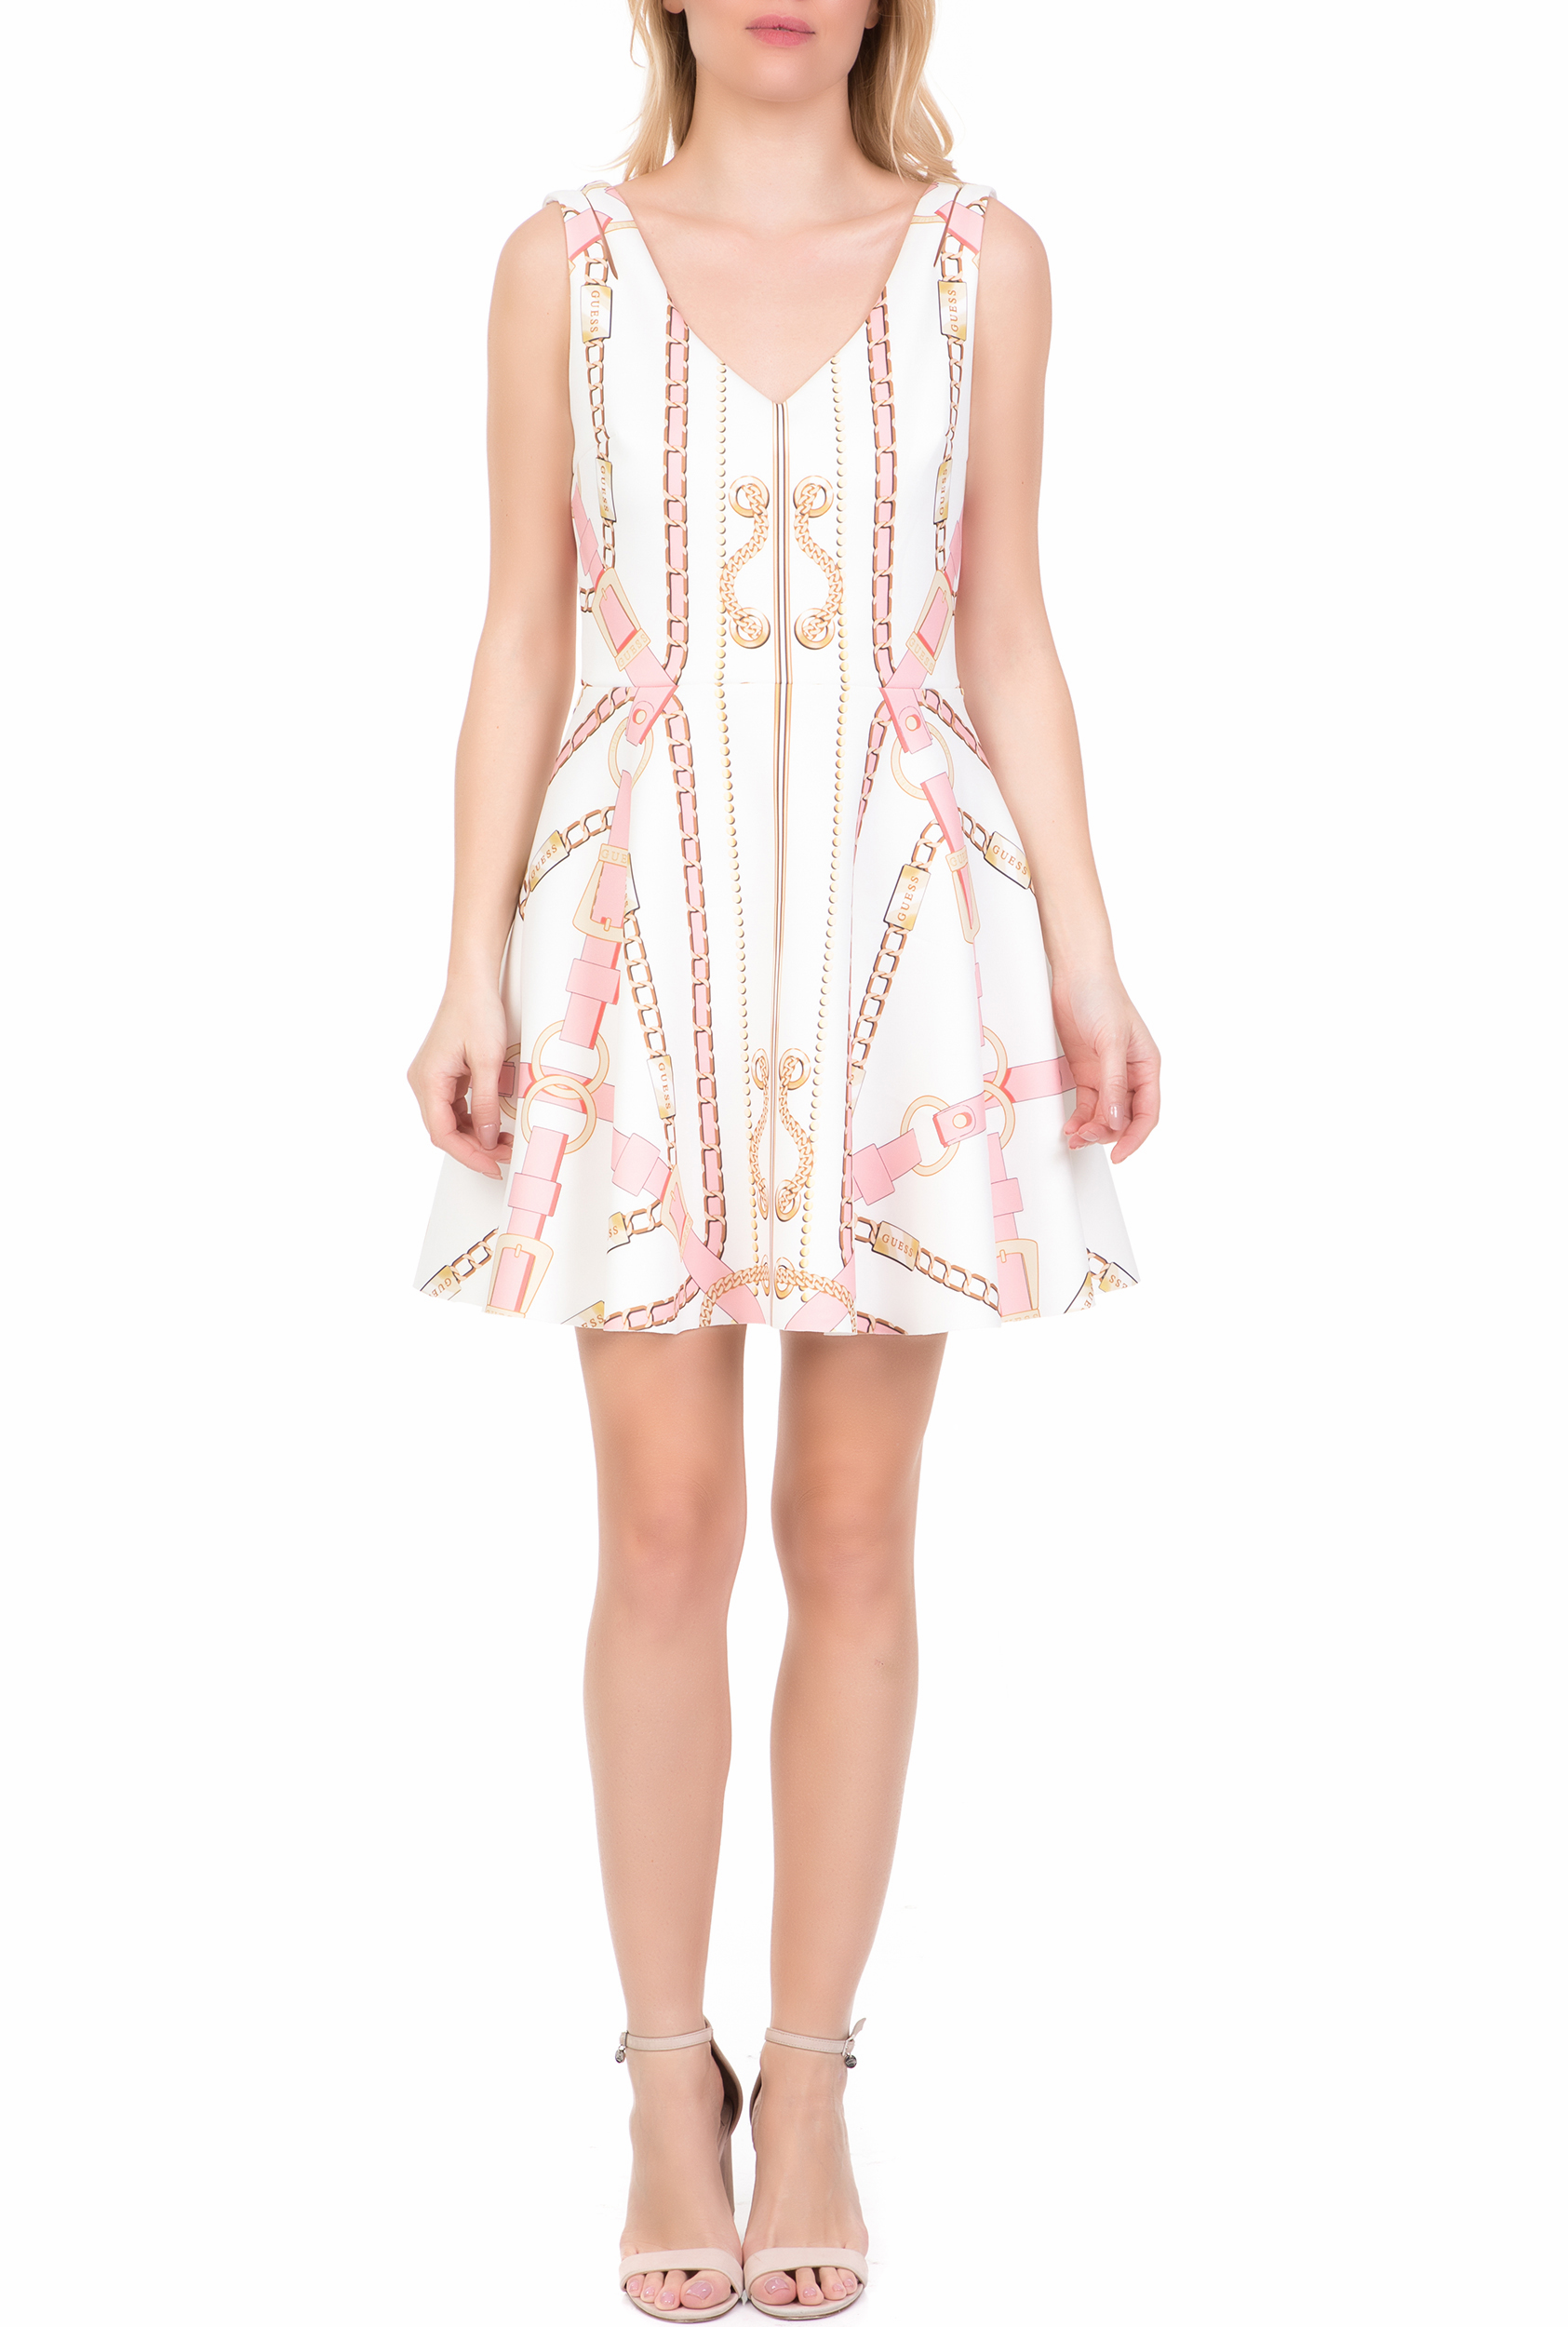 Γυναικεία/Ρούχα/Φορέματα/Μίνι GUESS - Γυναικείο μίνι κλος φόρεμα GALINA GUESS λευκό-ροζ